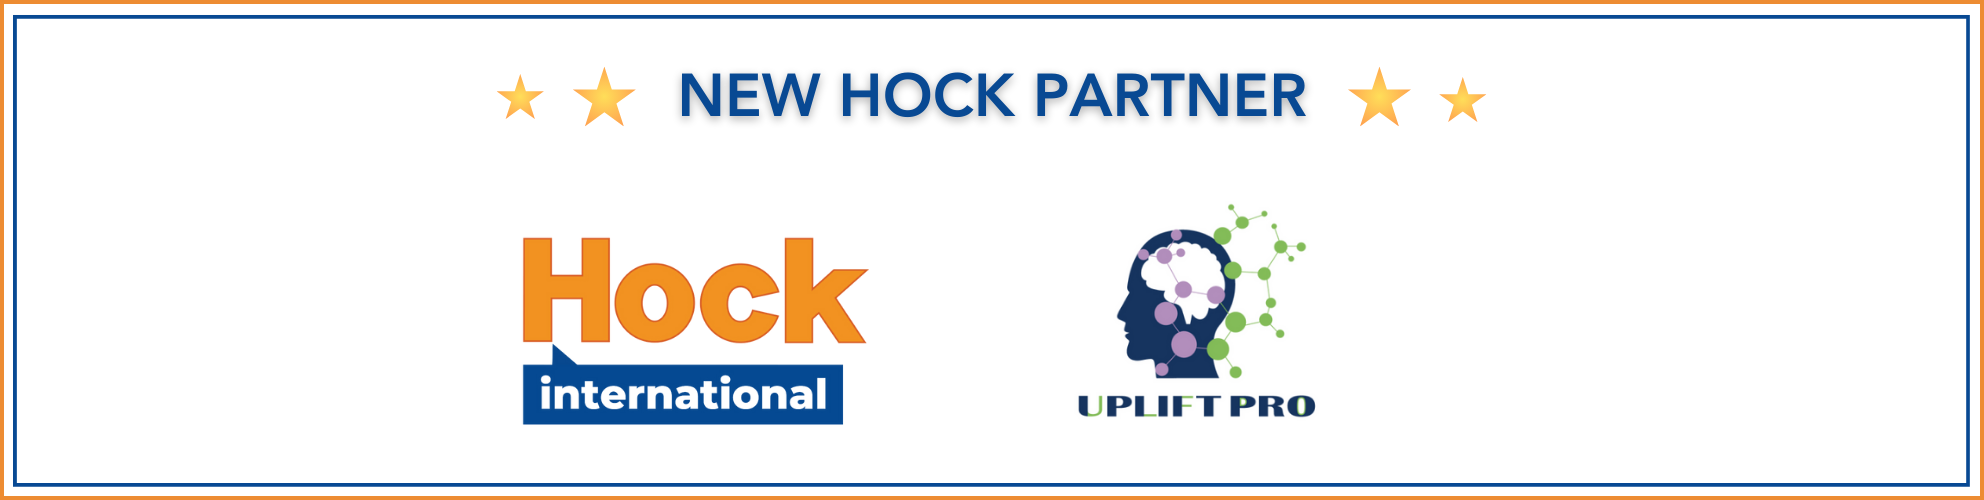 Uplift Pro - new HOCK partner